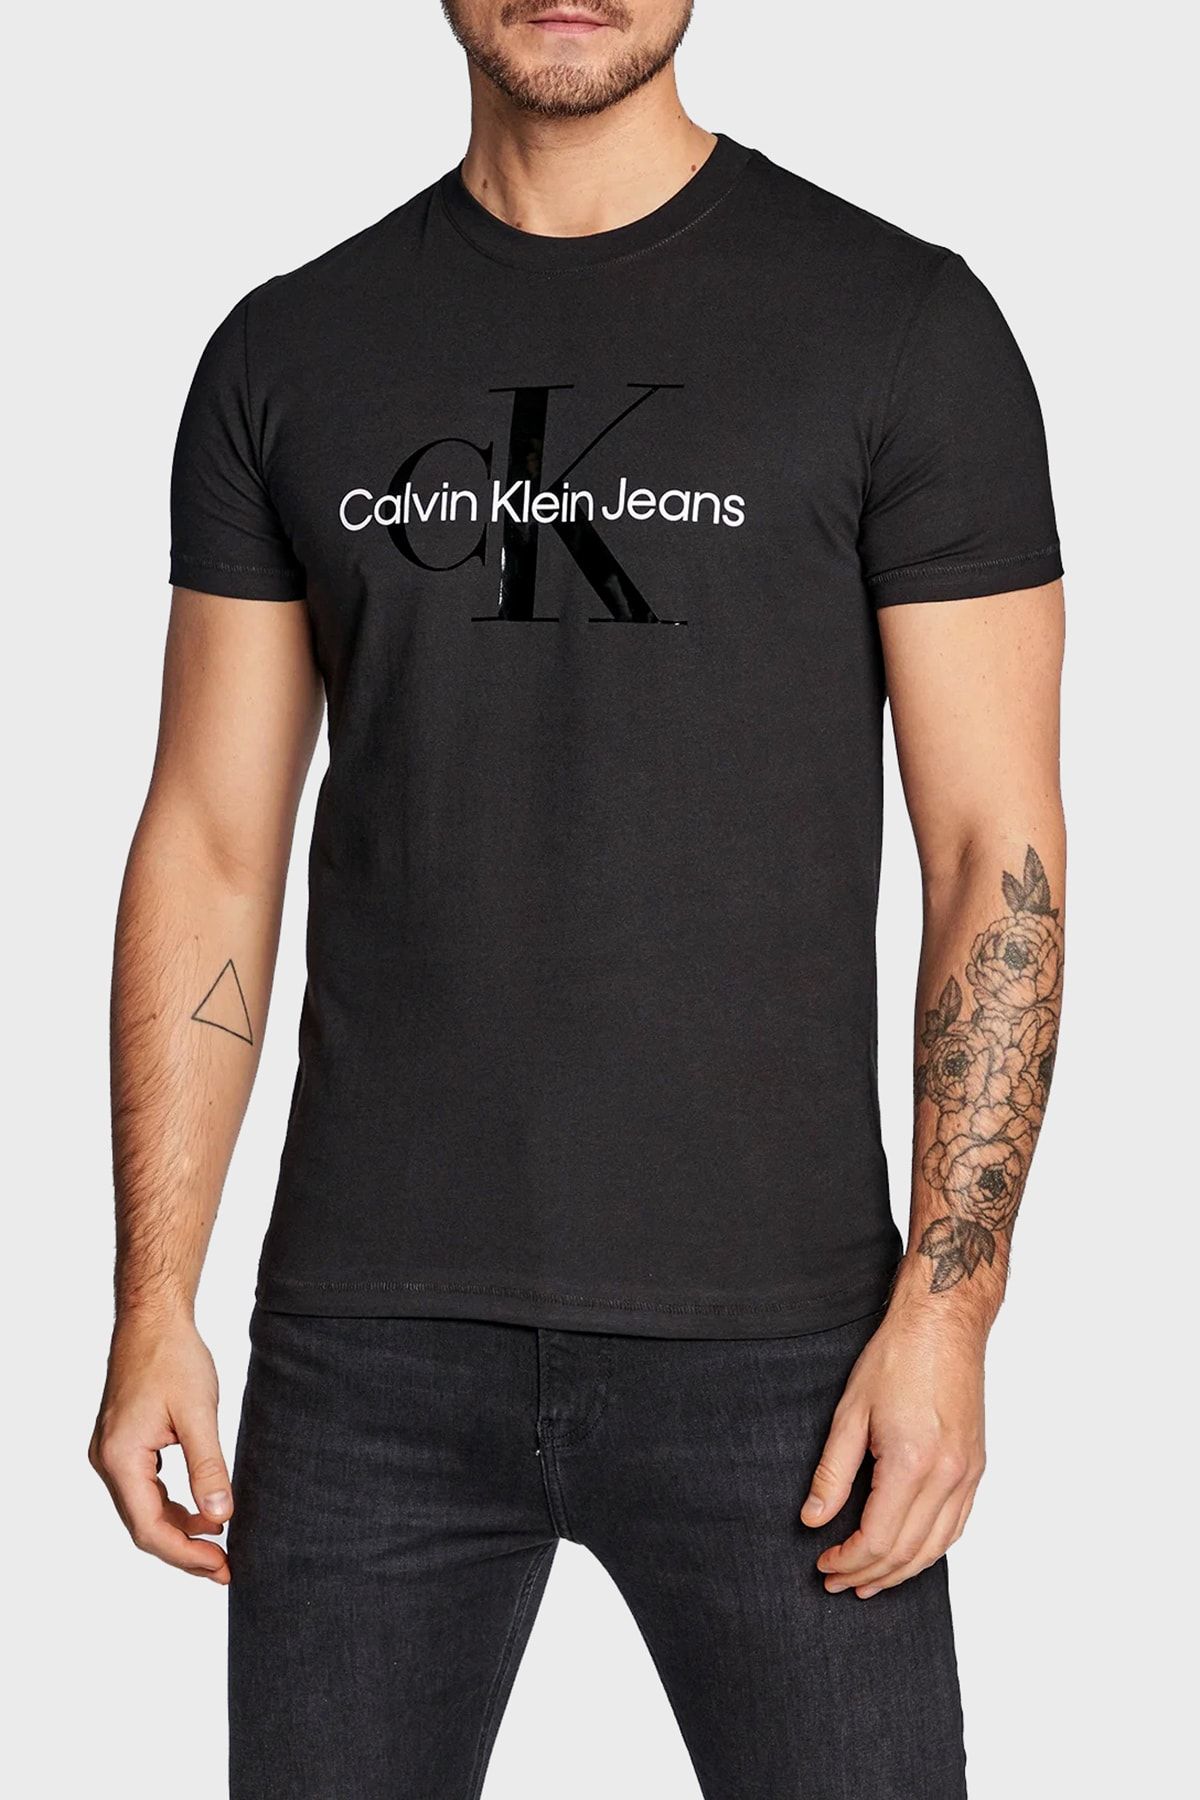 Calvin Klein Erkek T-Shirt Modelleri, Fiyatları - Trendyol